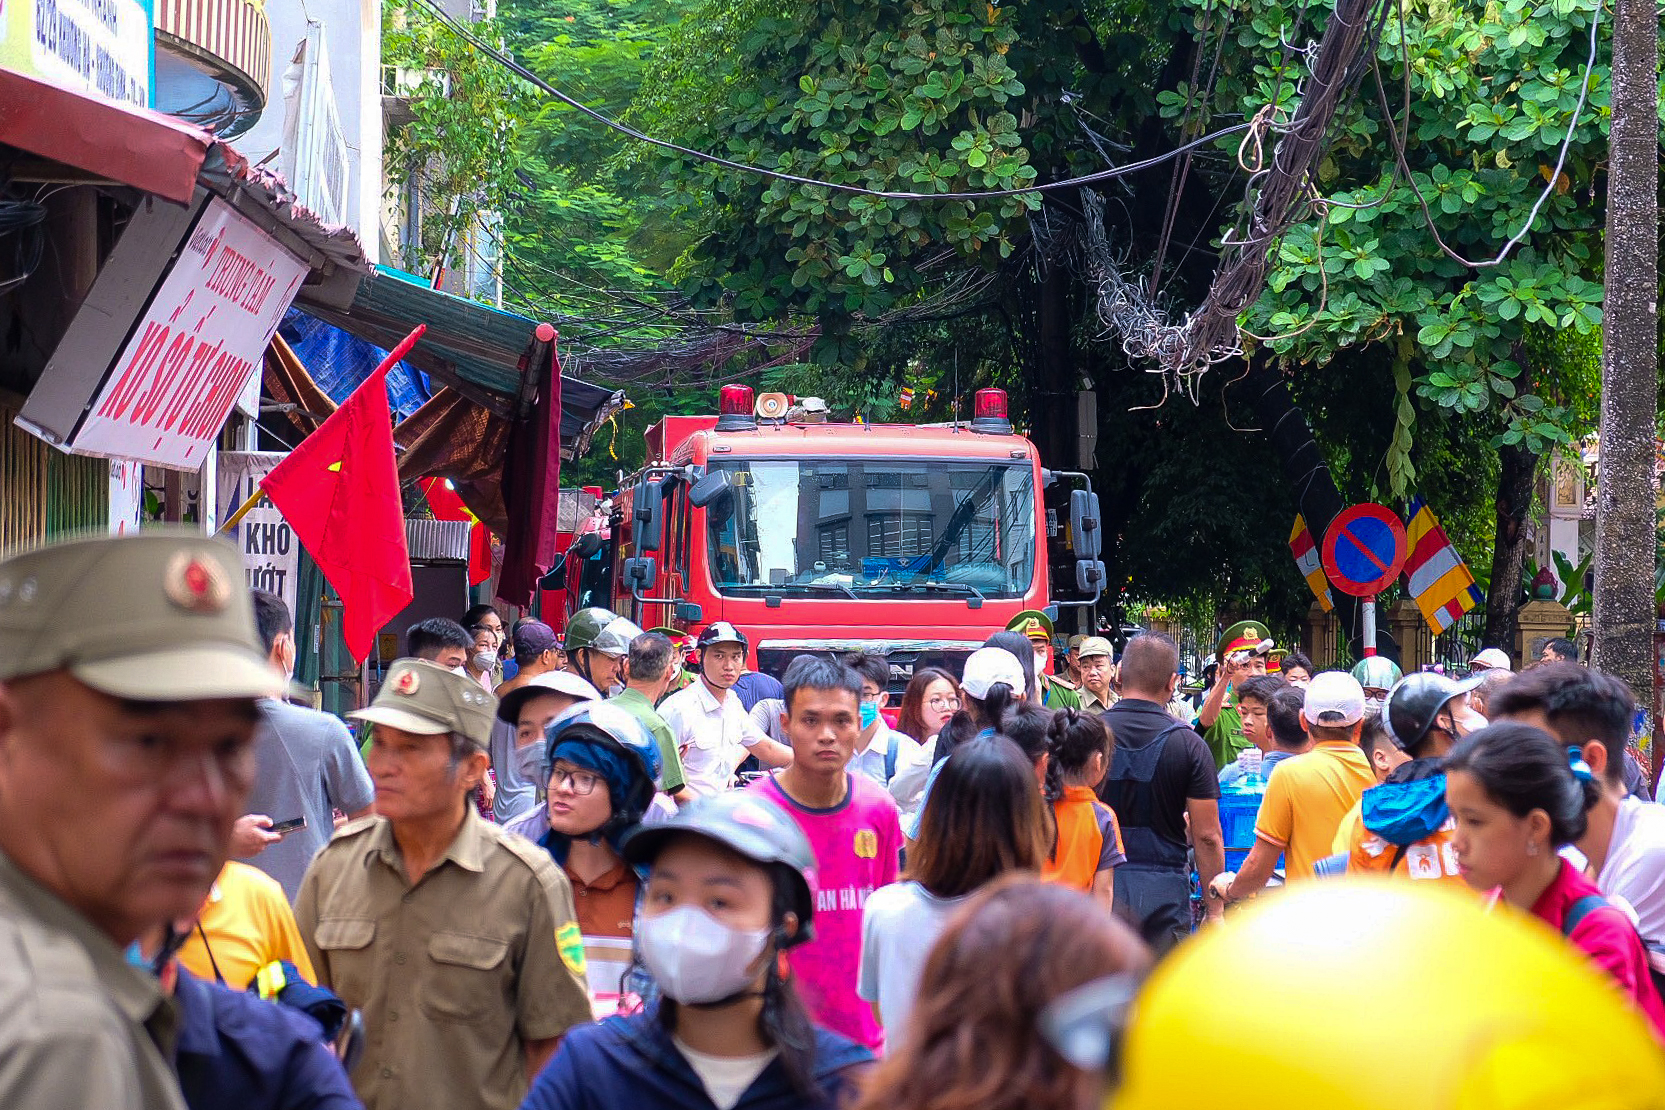 Bí thư Hà Nội, Phó Thủ tướng đến hiện trường chỉ đạo khắc phục hậu quả vụ cháy chung cư mini - Ảnh 6.